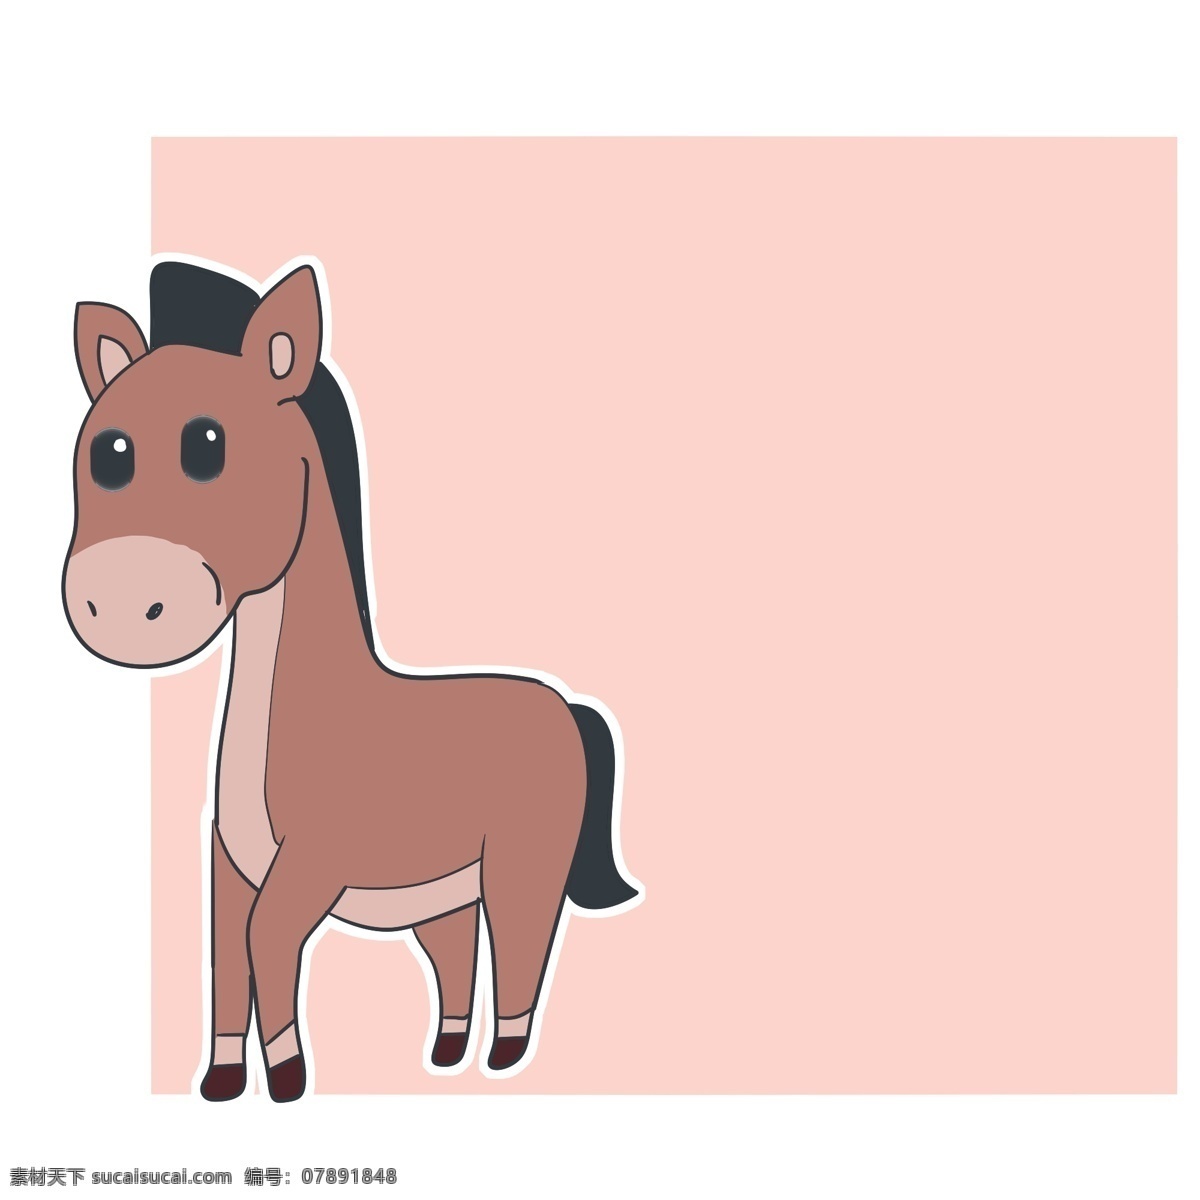 卡通 小马 动物 边框 粉色方形边框 可爱边框 卡通动物边框 卡通小马动物 小马装饰边框 可爱插画